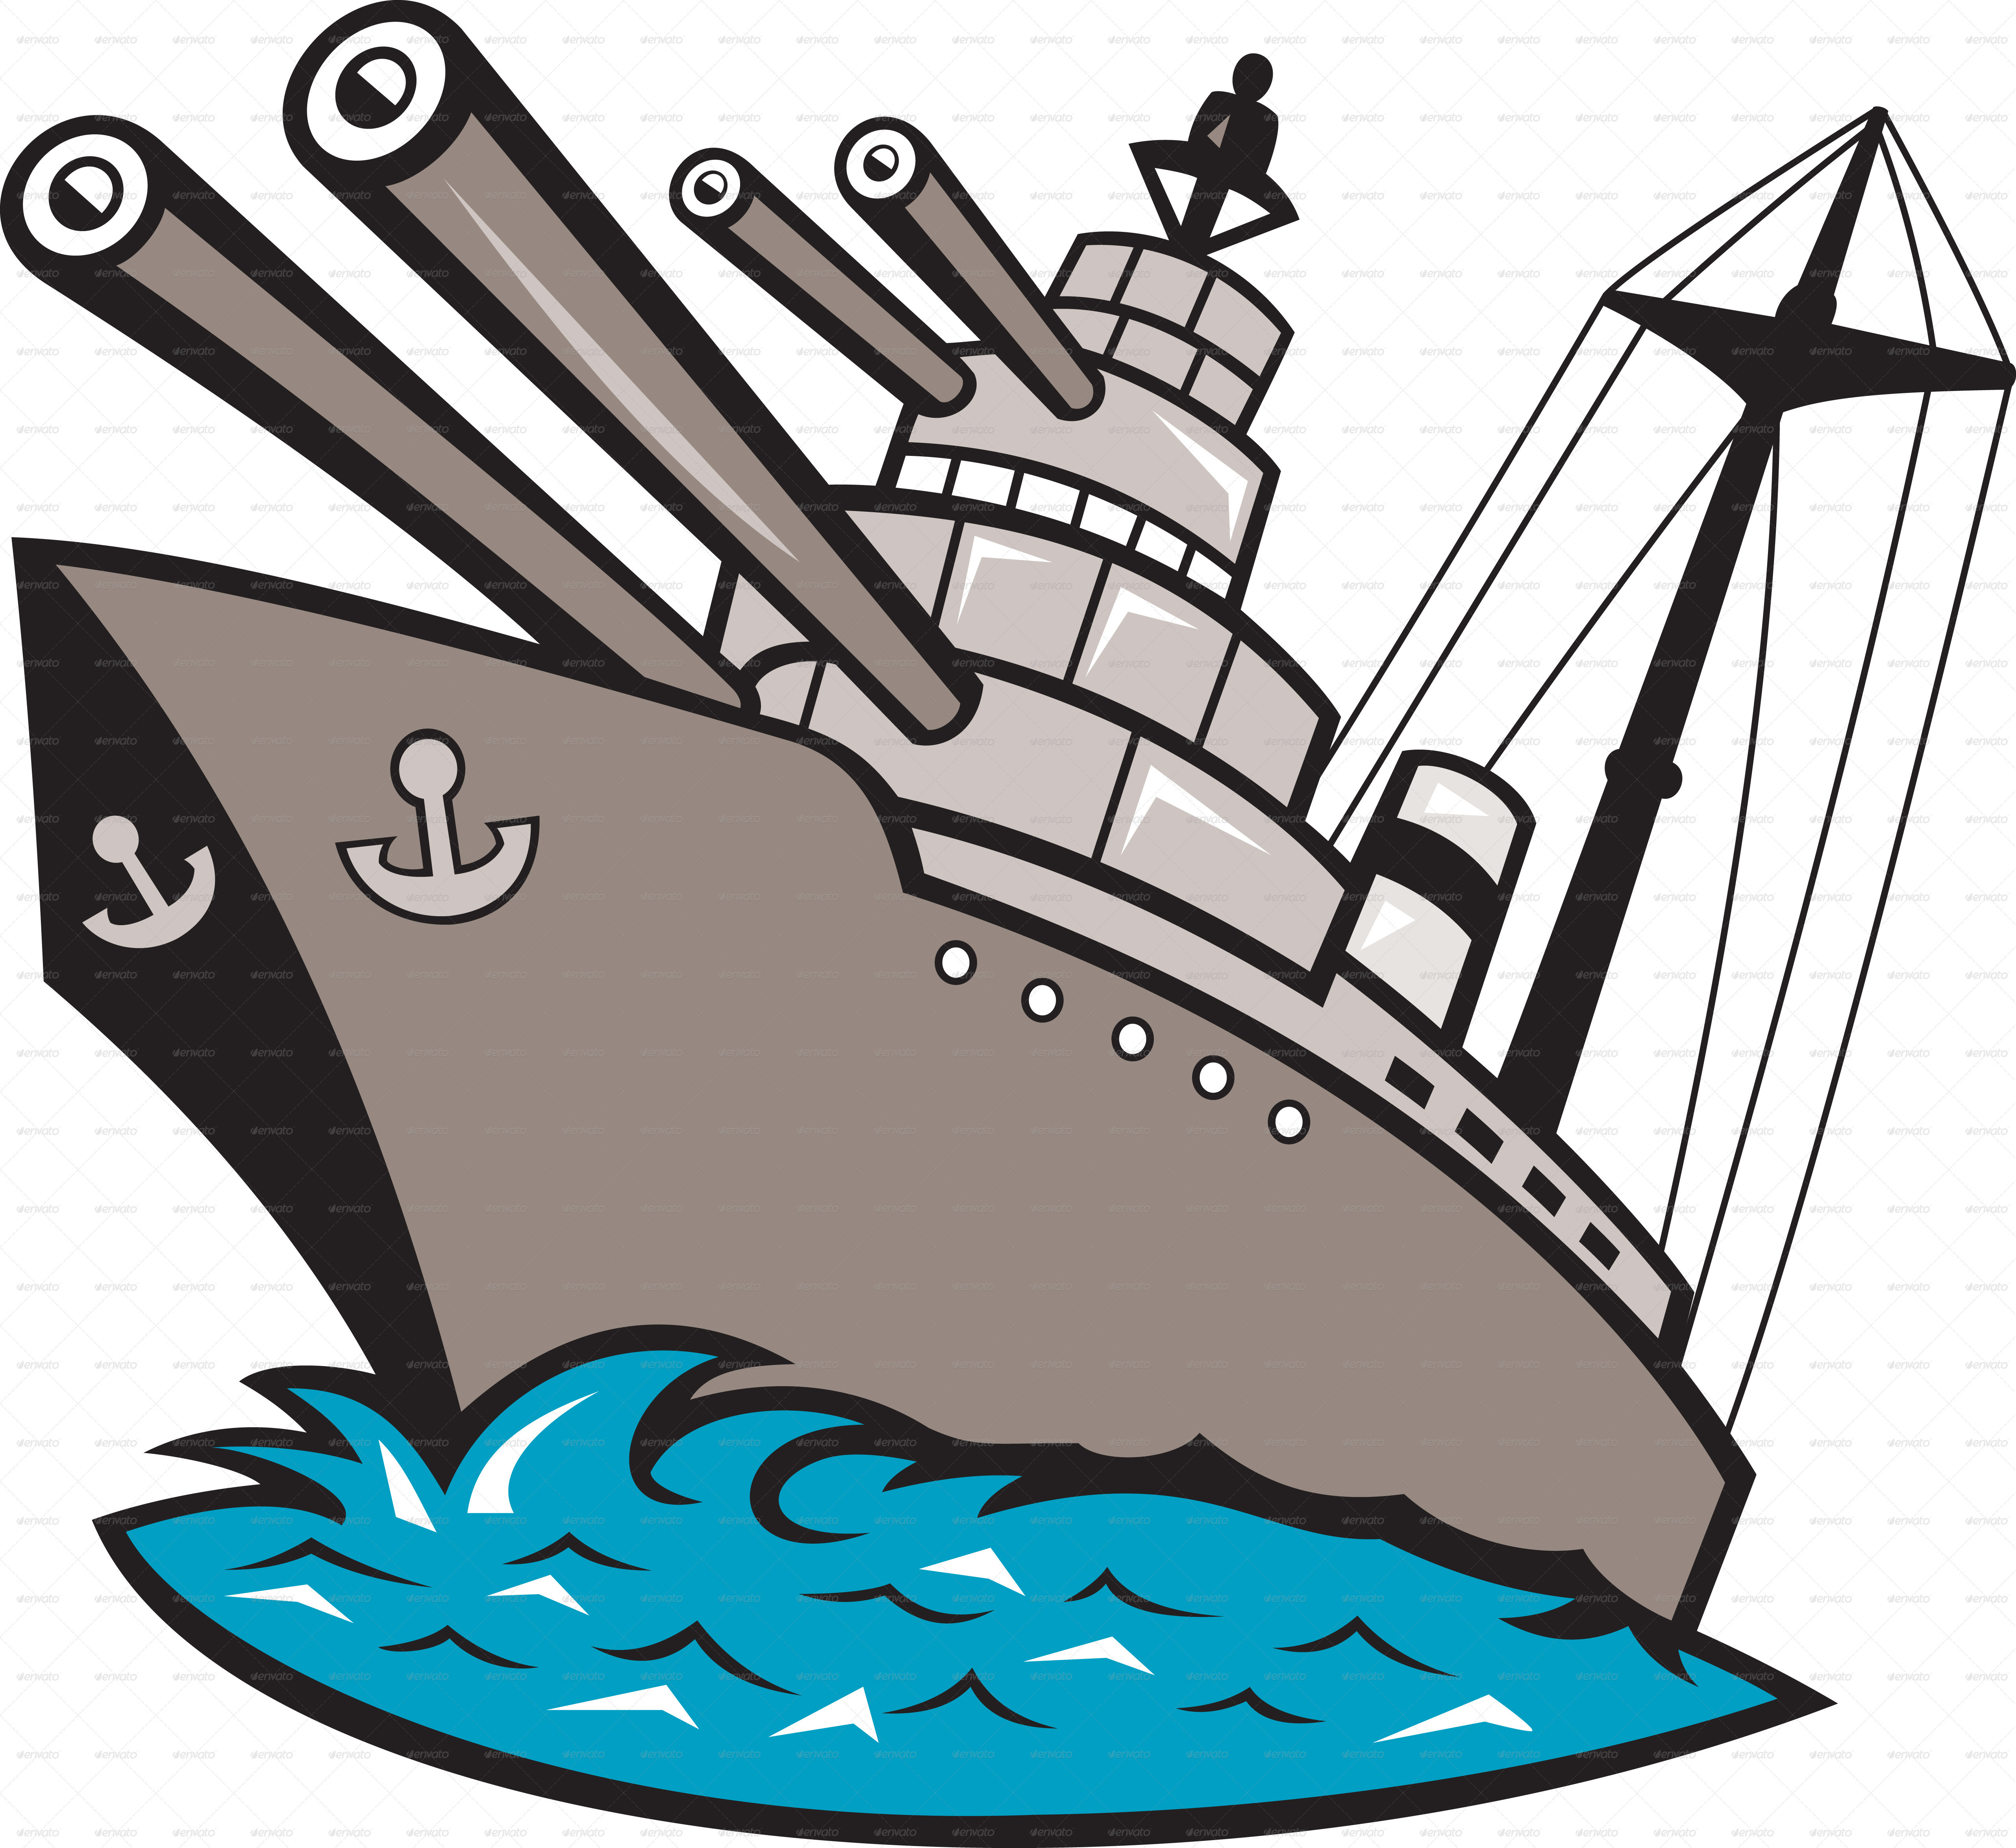 Wwii Battleships Clipart